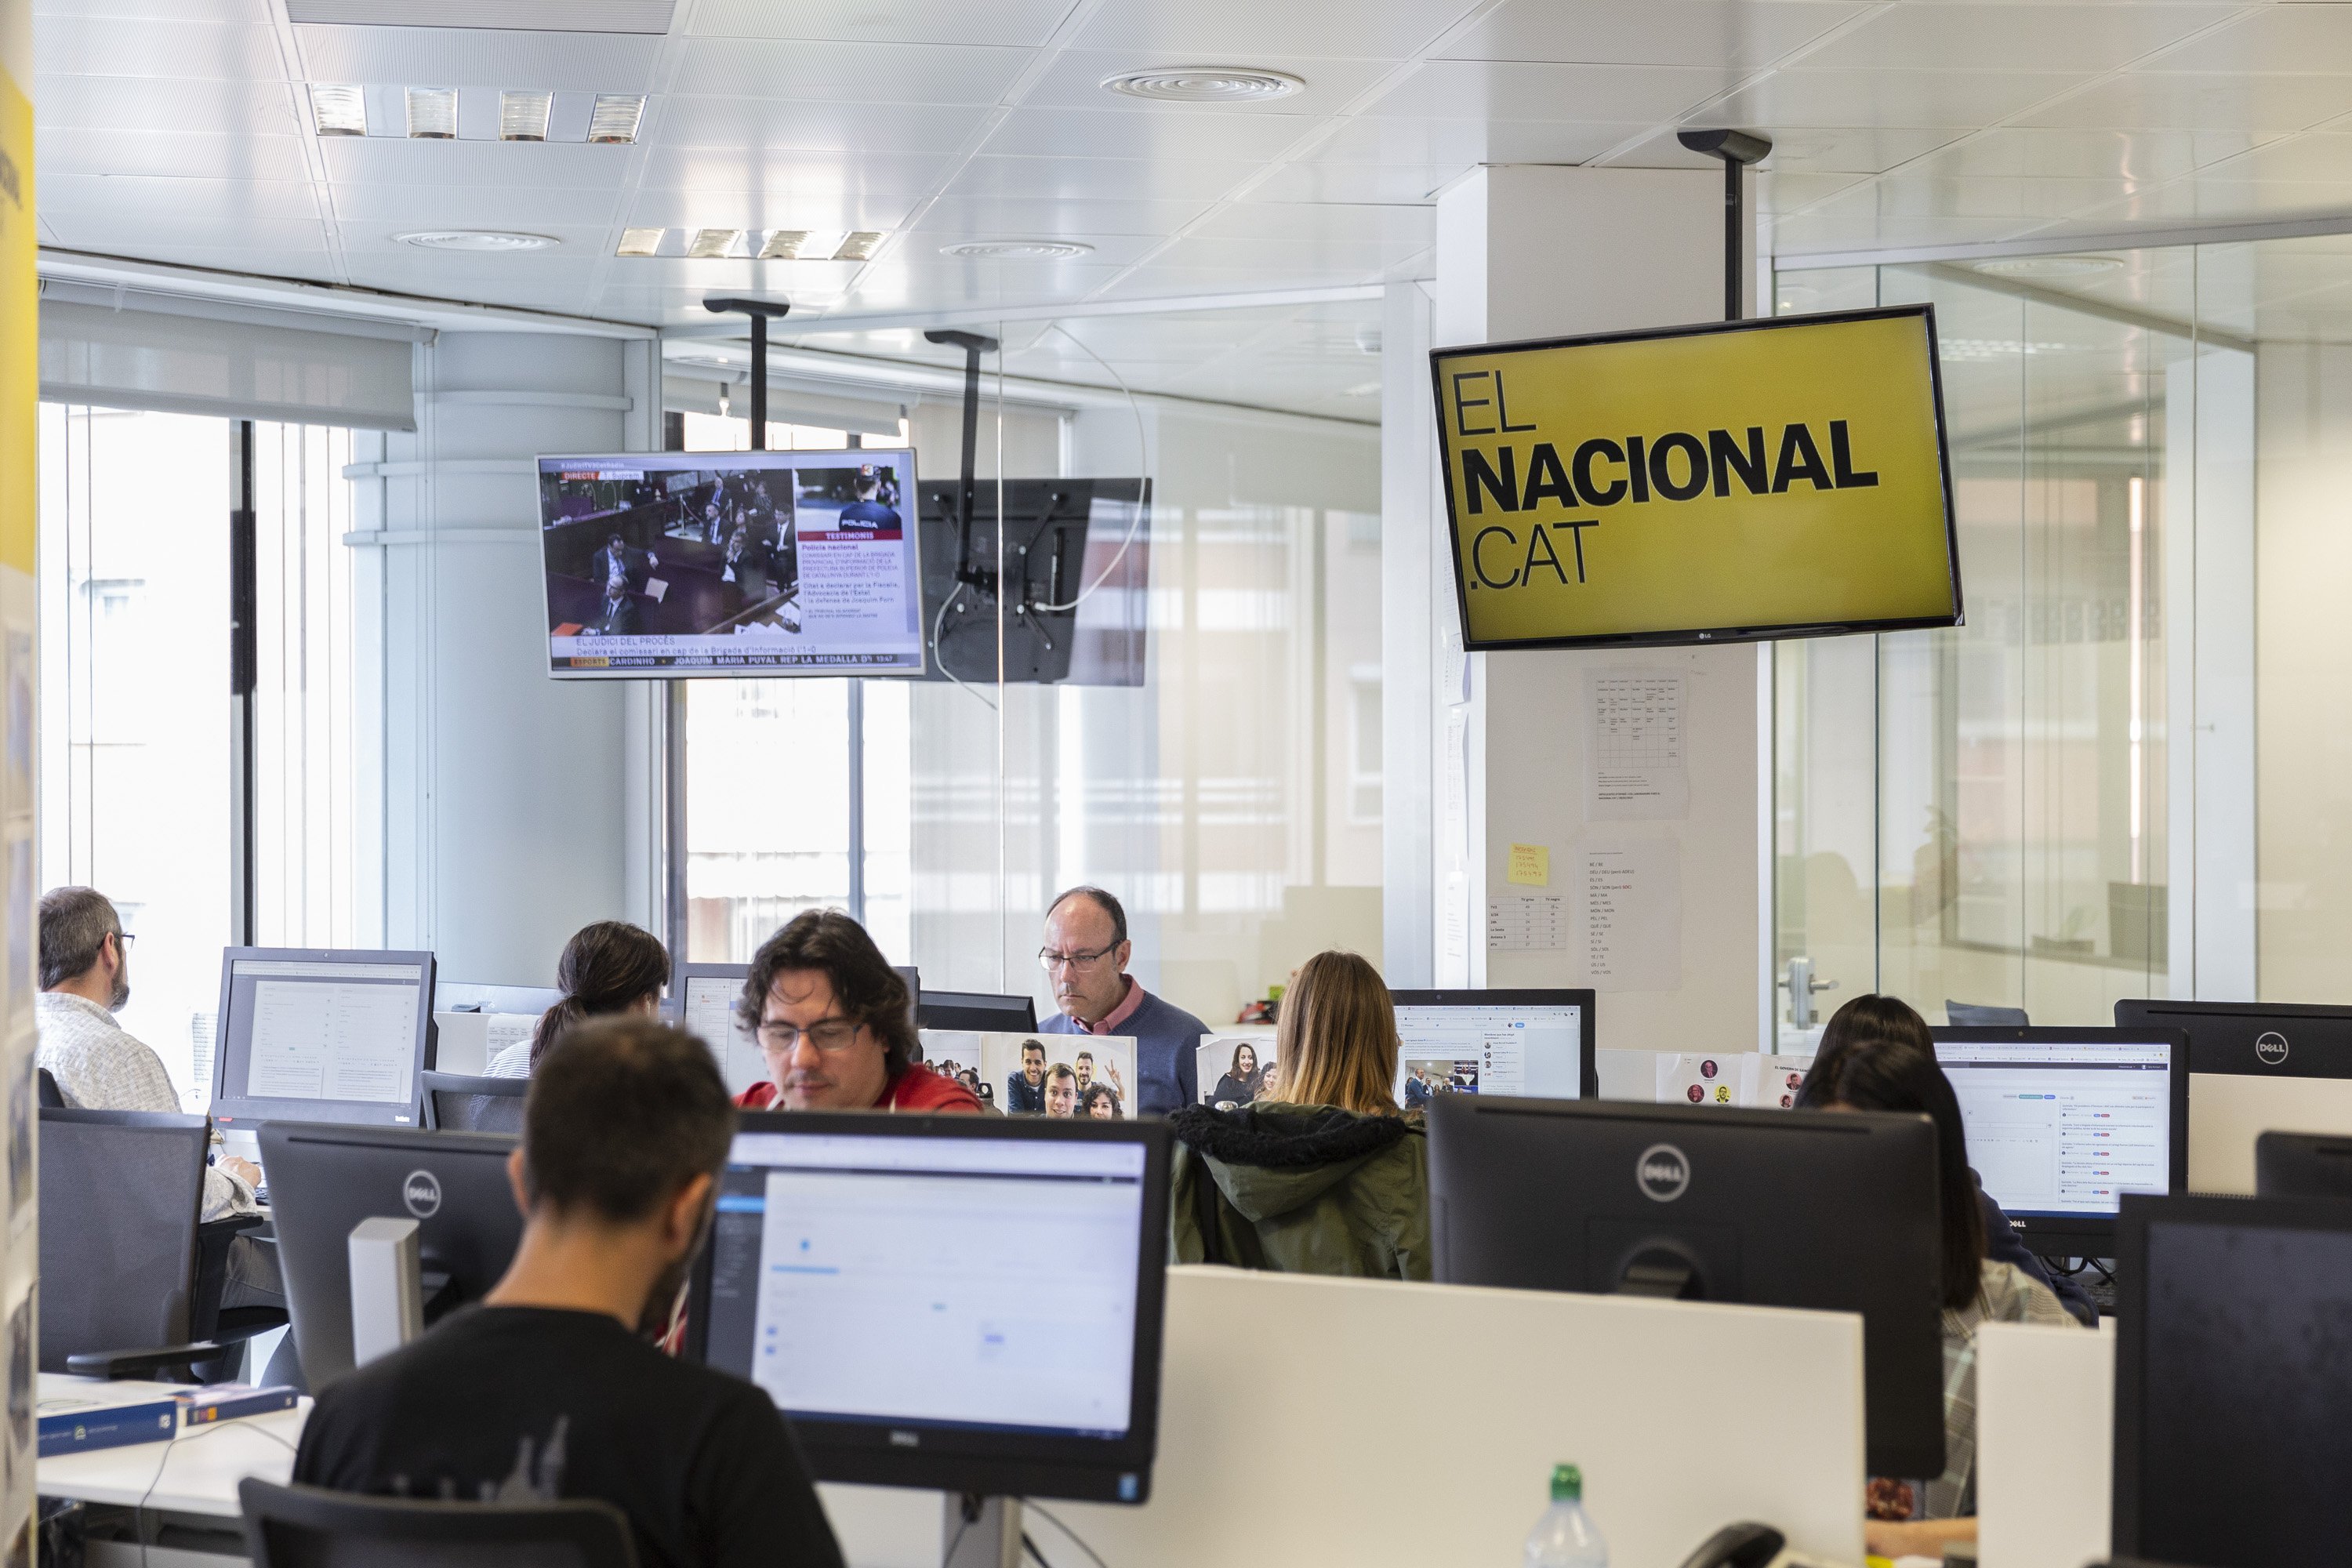 ElNacional.cat, el digital catalán más visto (de largo) el día de la sentencia al procés